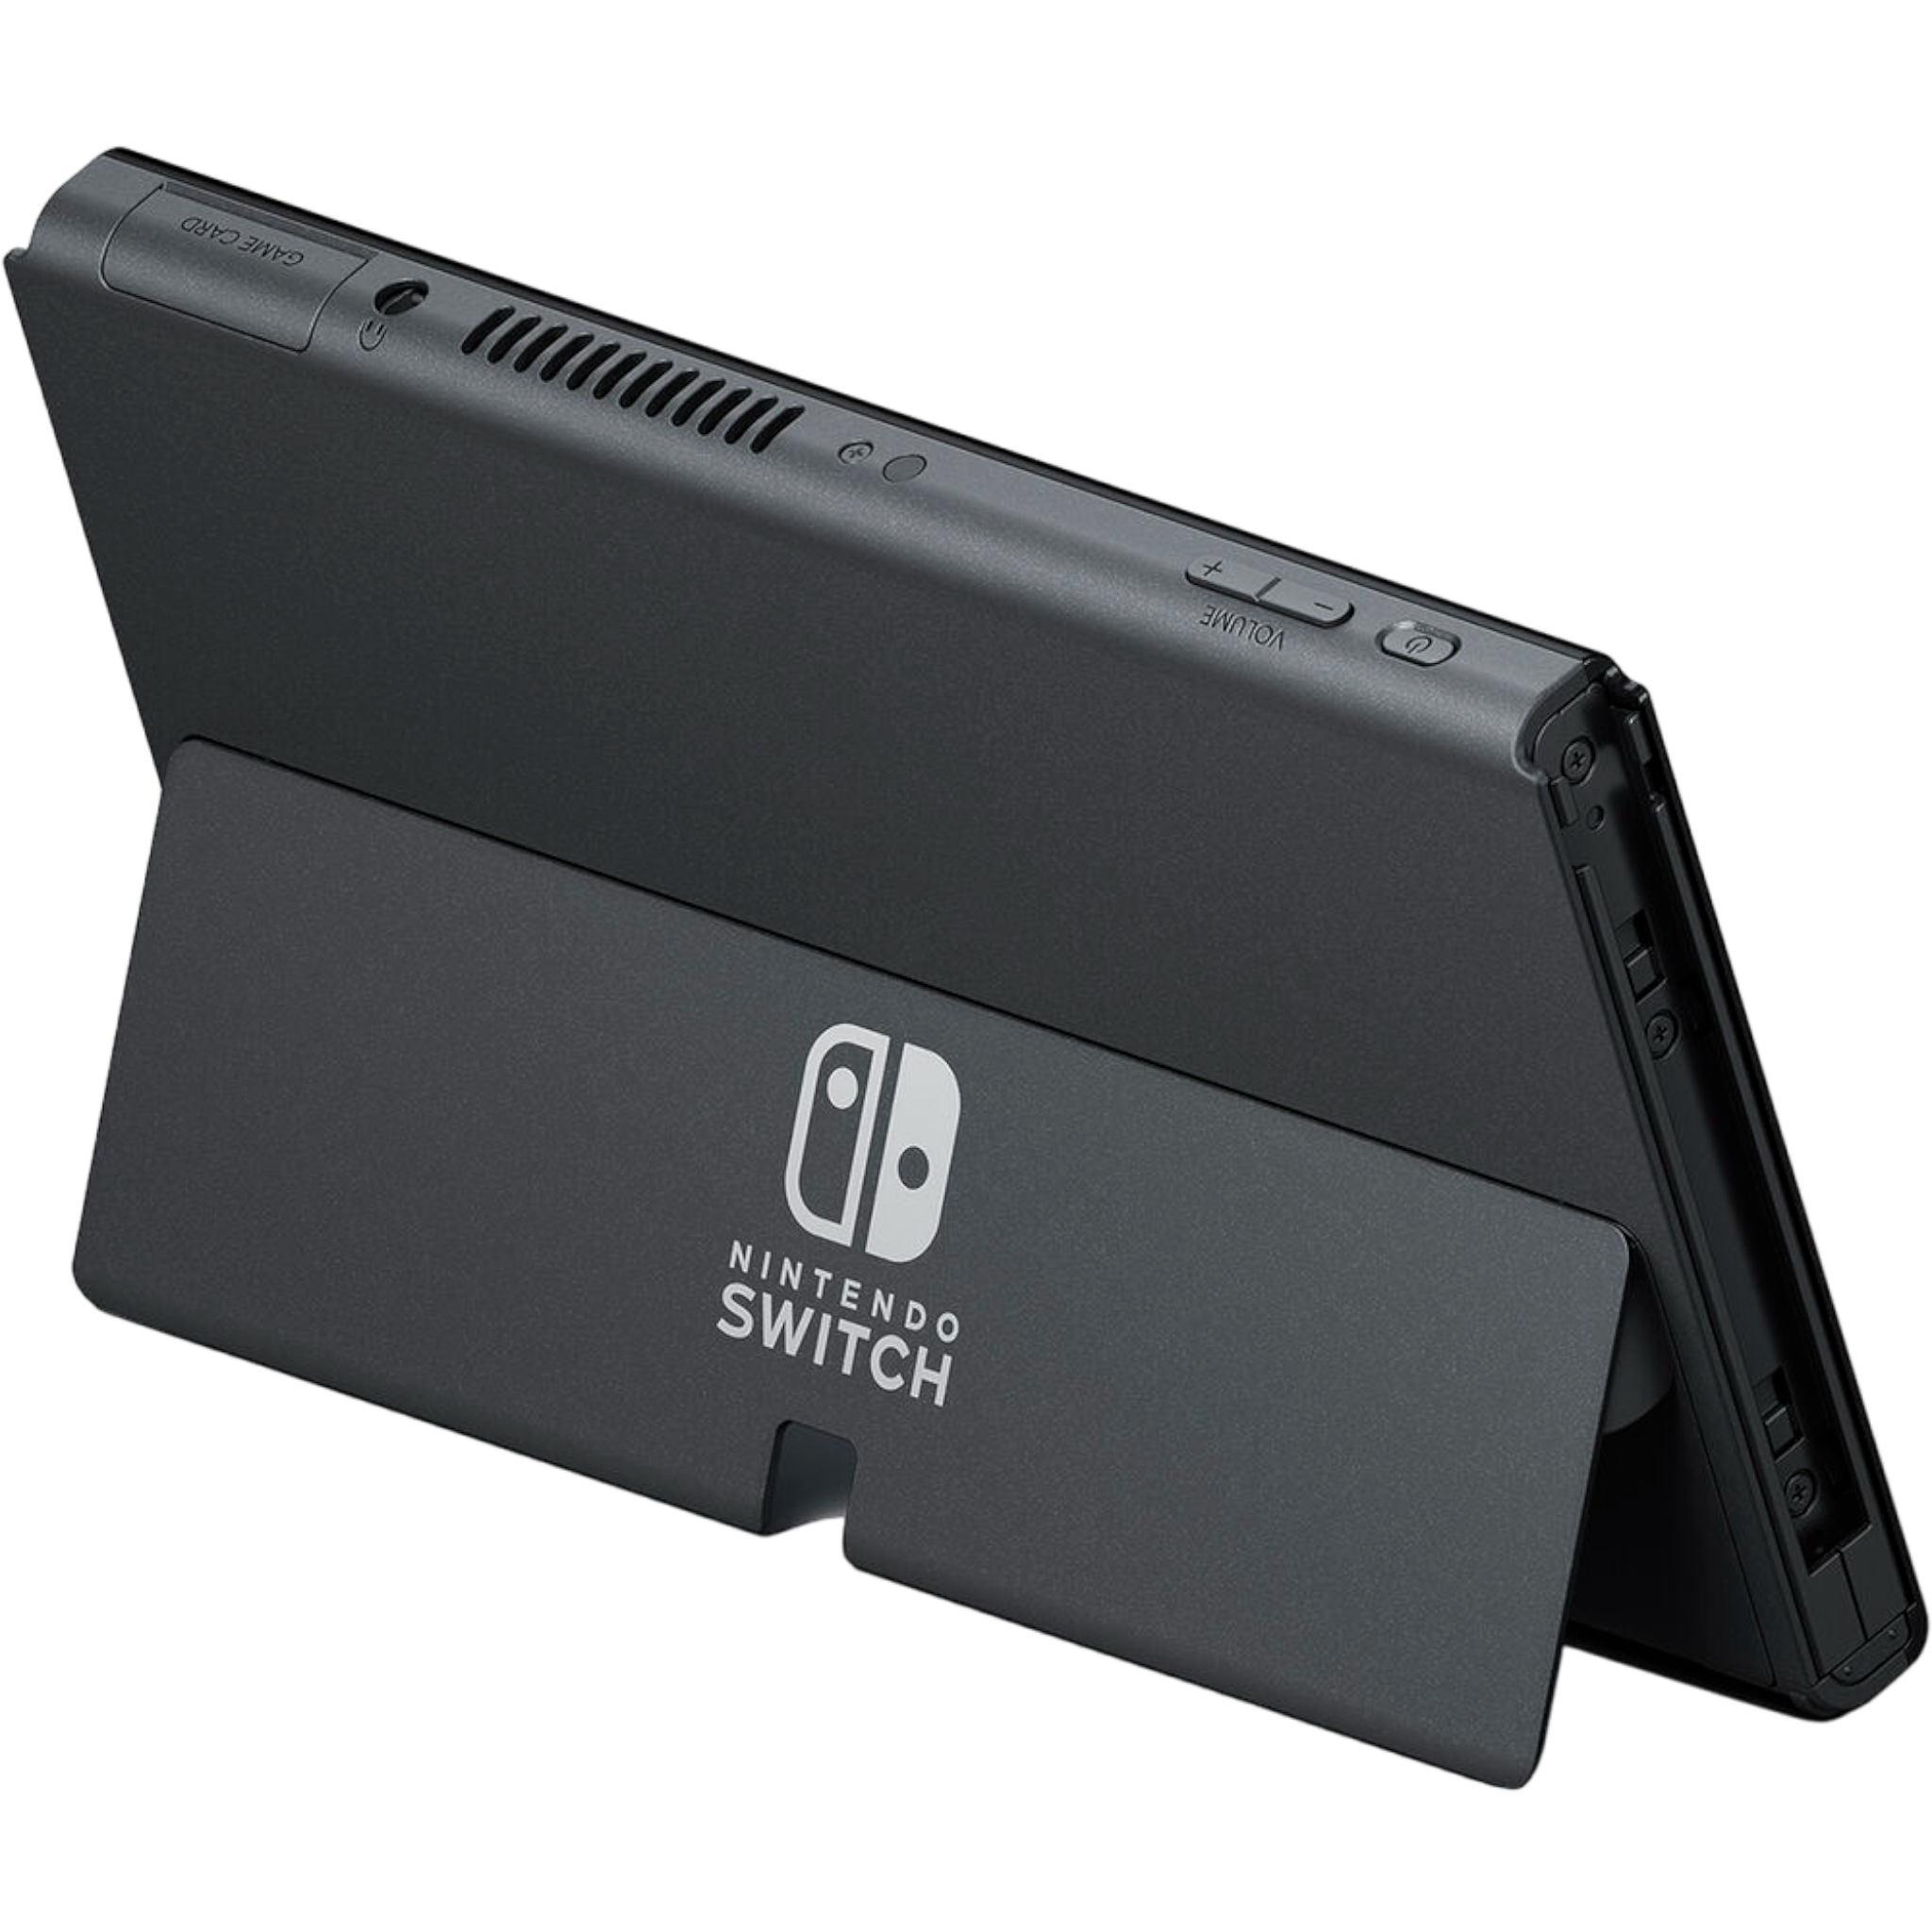 Nintendo Switch - Nuovo Modello Color Neon